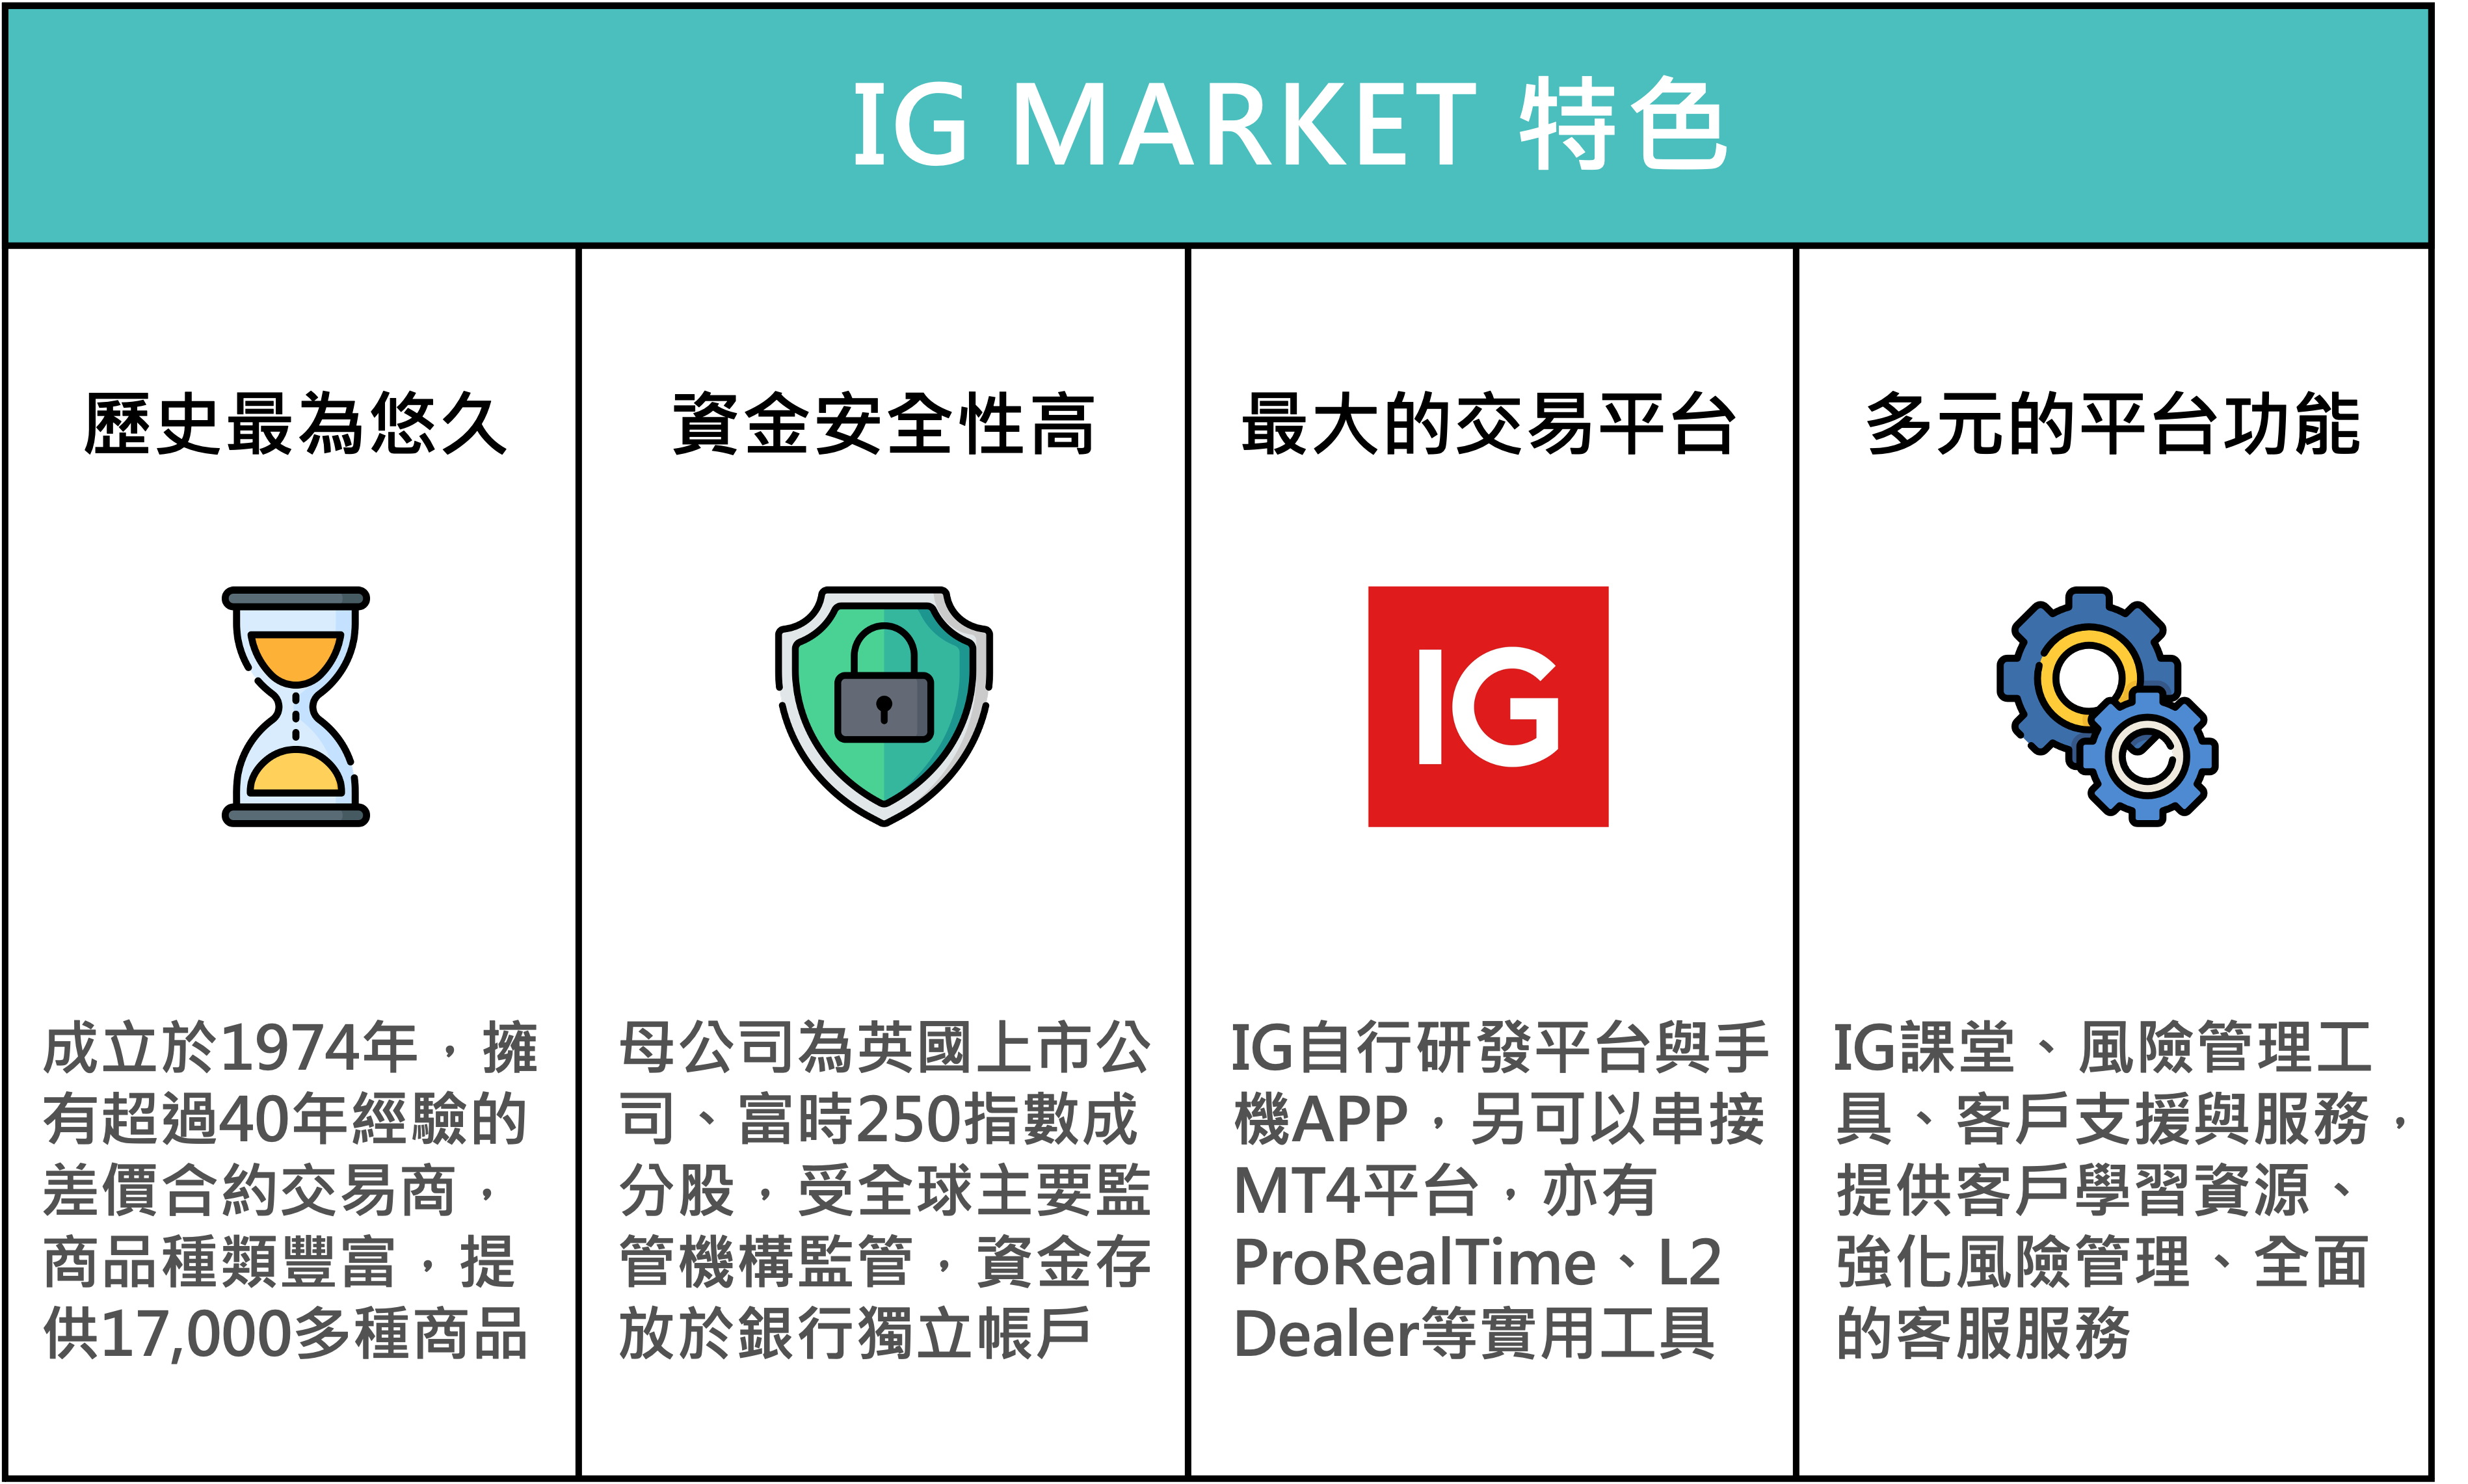 IG Market 特色